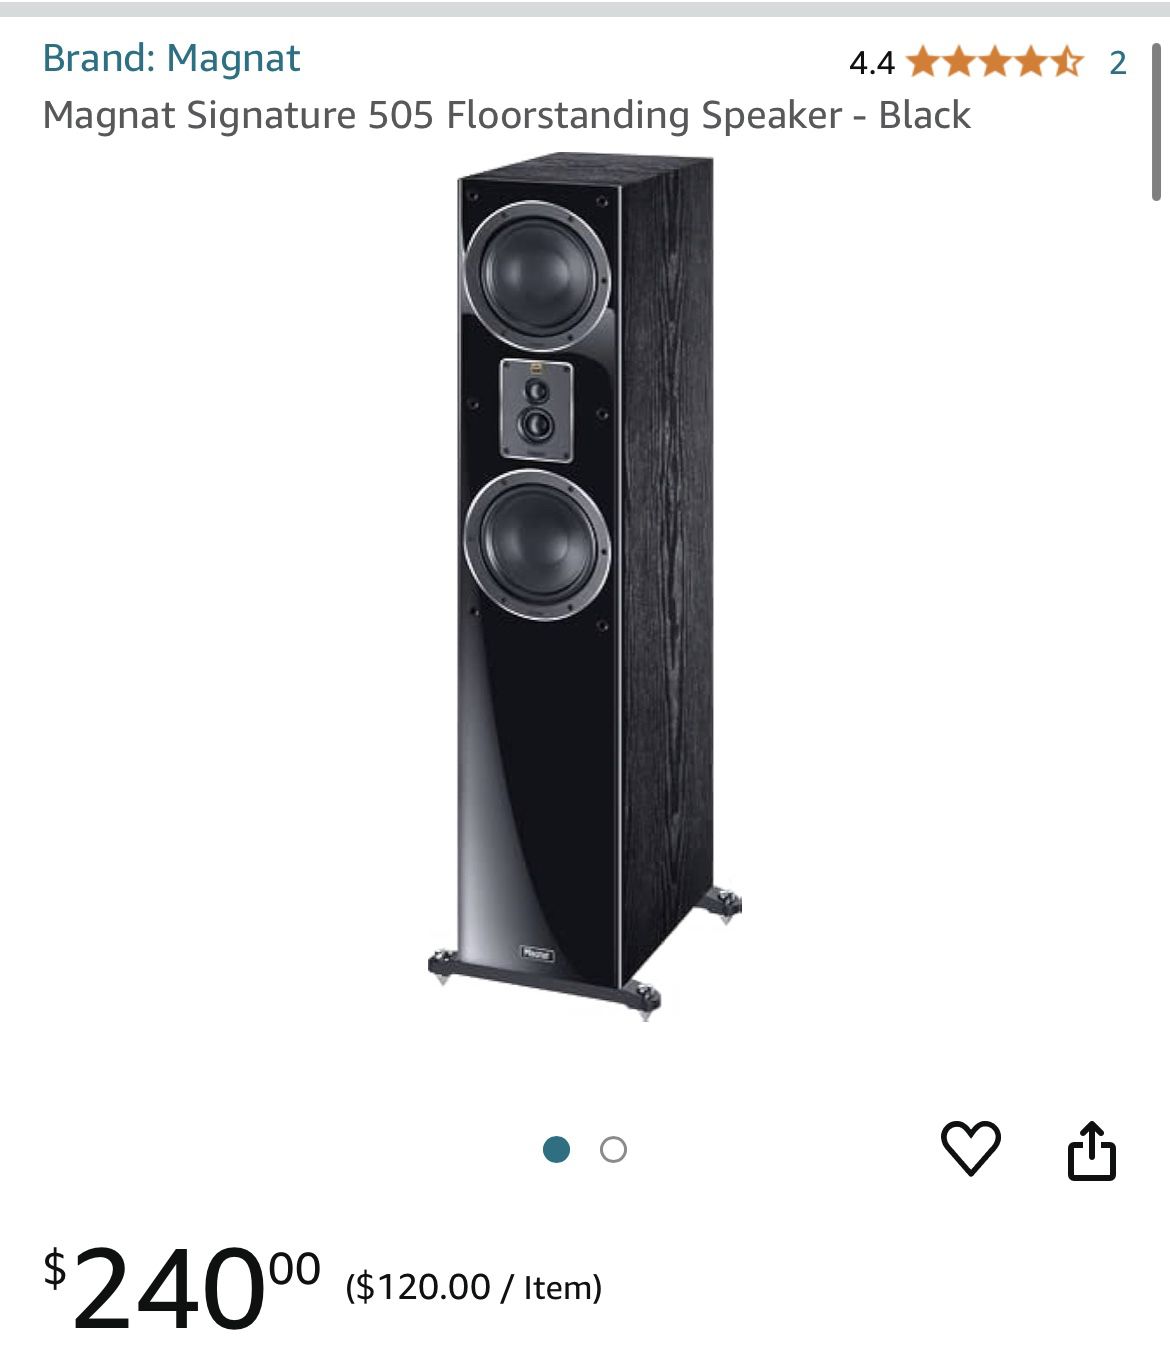 Magnat Signature 505 Floorstanding Speaker - Black